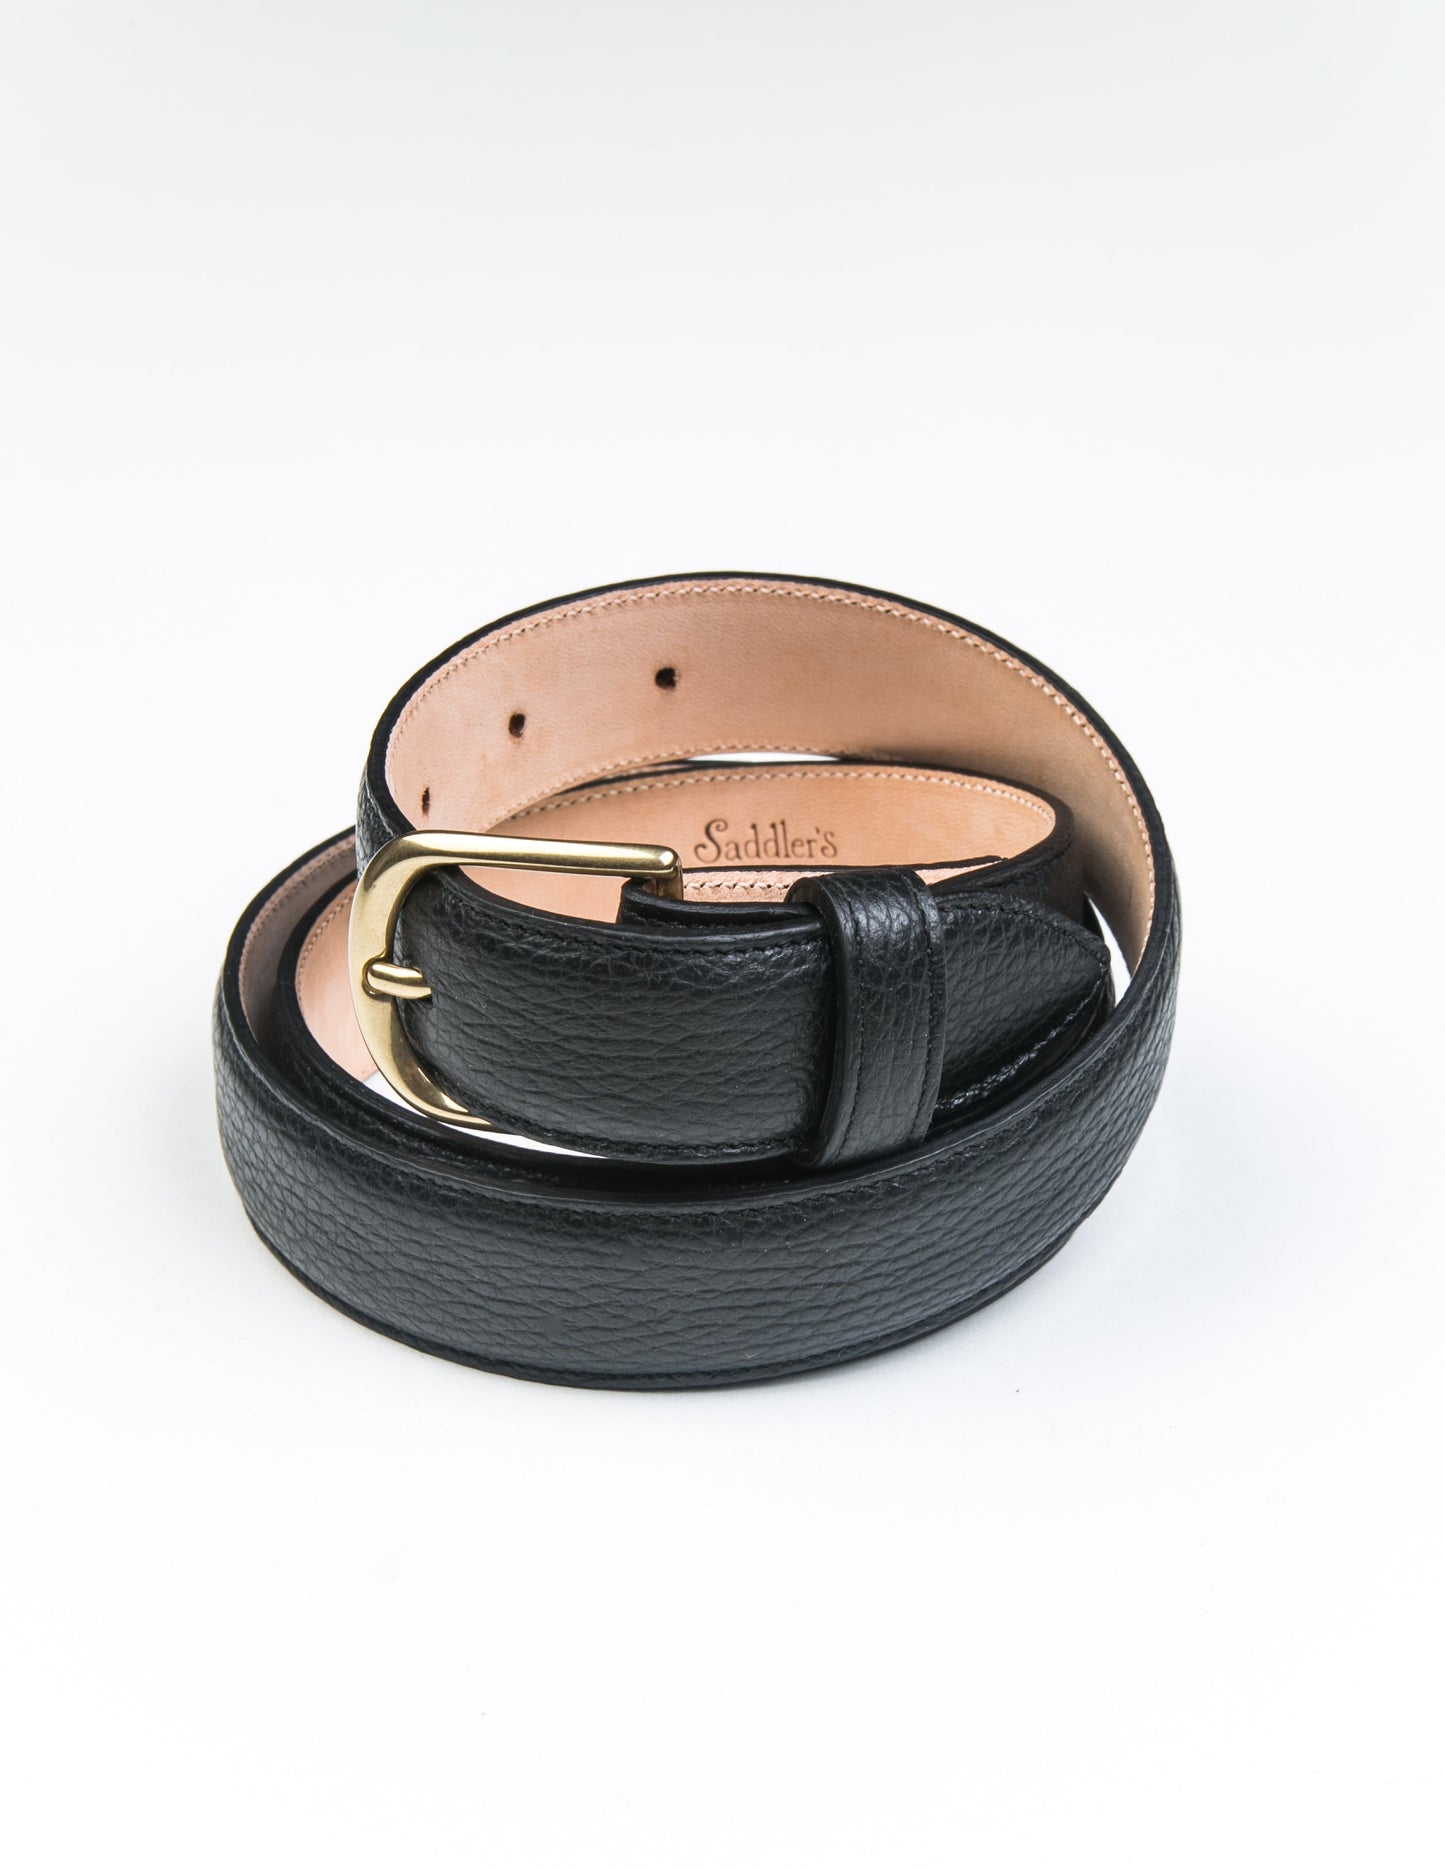 Dress Belt in Black Grain Leather